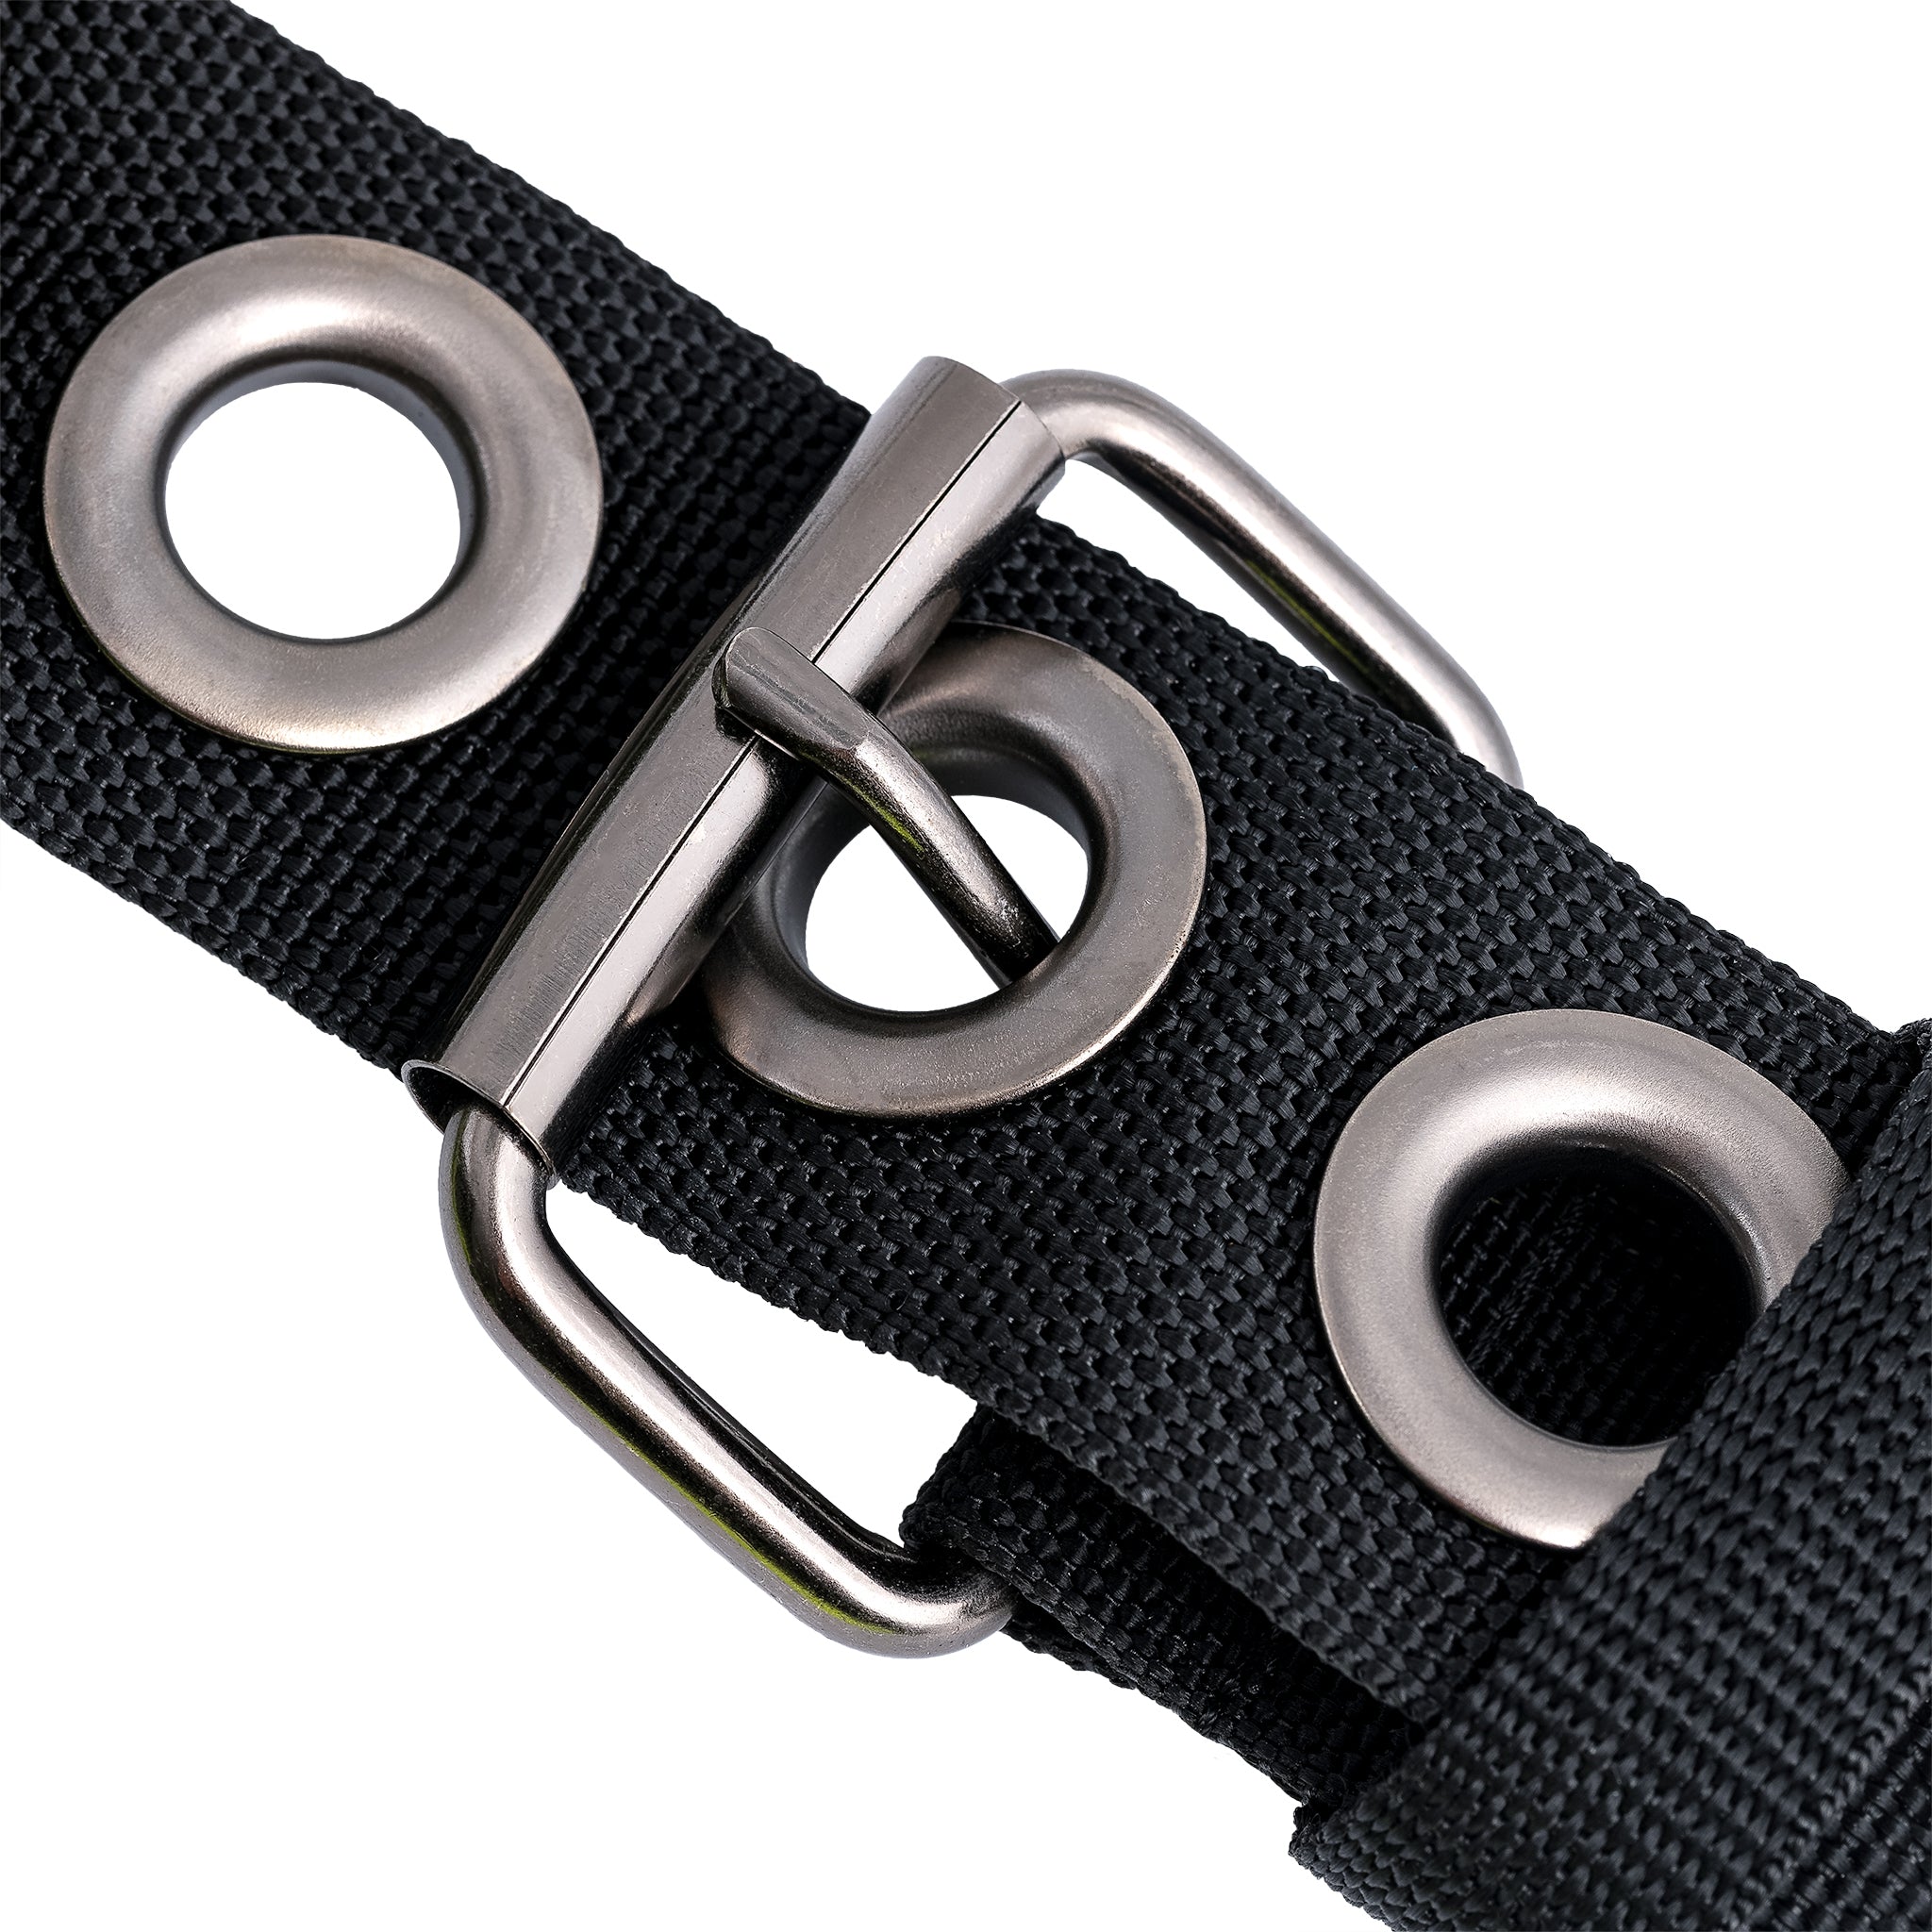 Hi-Vis Contractor's Tool Belt with Suspenders - Bucket Boss